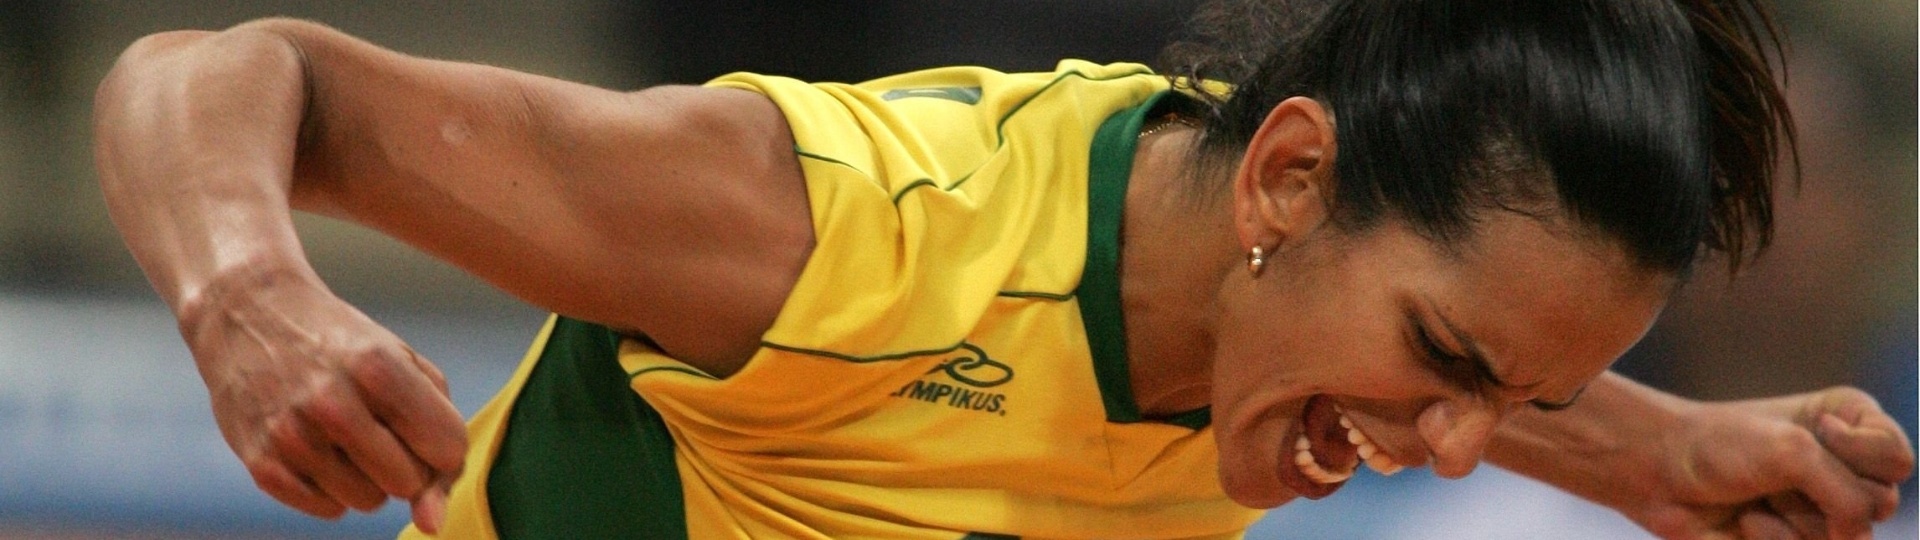 Virna comemora ponto marcado pela seleção brasileira na Olimpíada de Atenas, em 2004